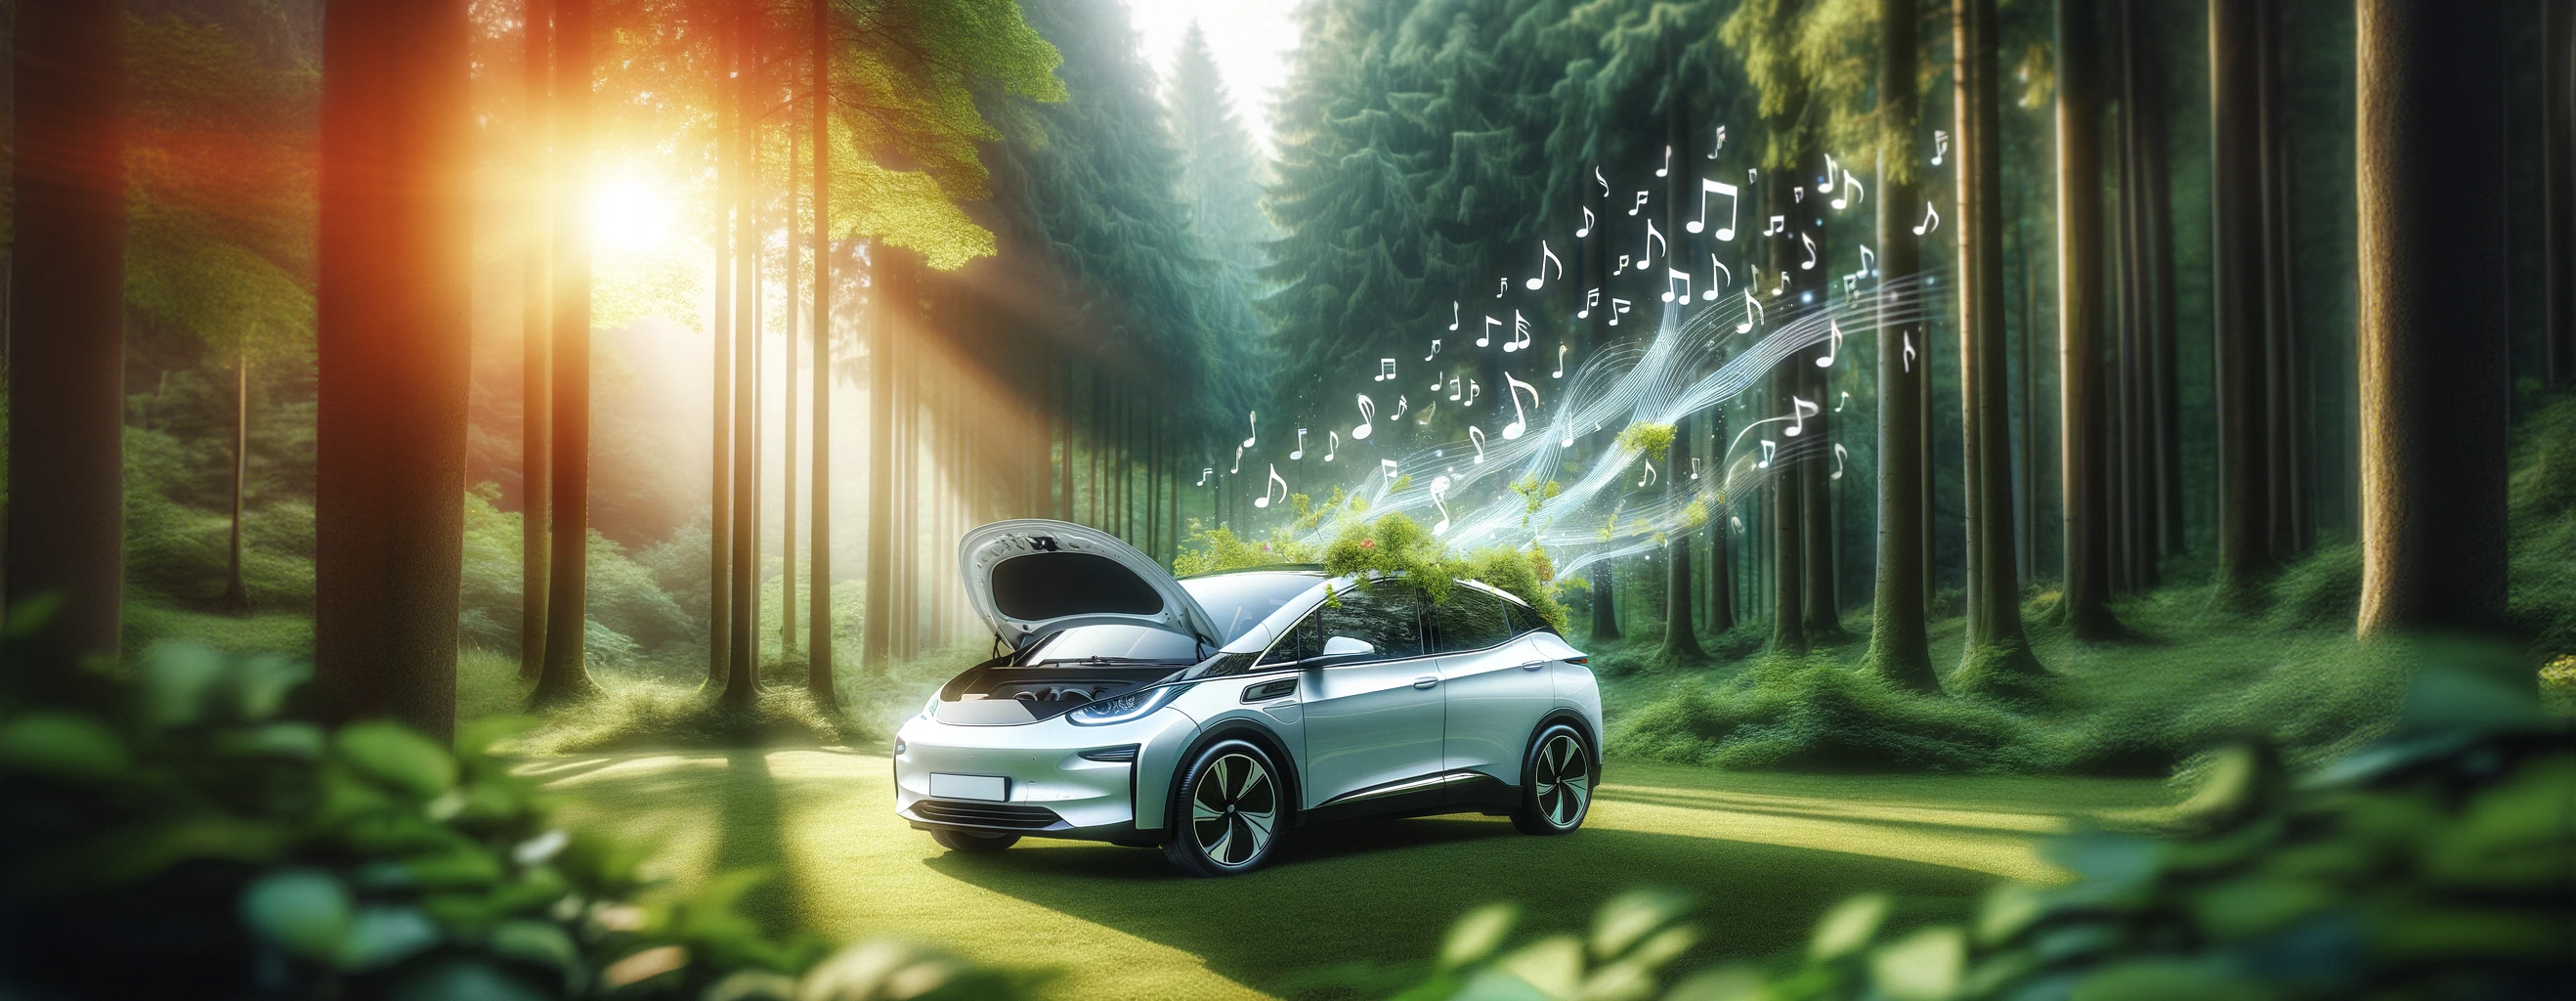 Une voiture électrique dans une forêt paisible. Son toit est couvert de végétation et en émanent des notes de musiques qui s'envolent en volutes. © DALL·E, Futura   